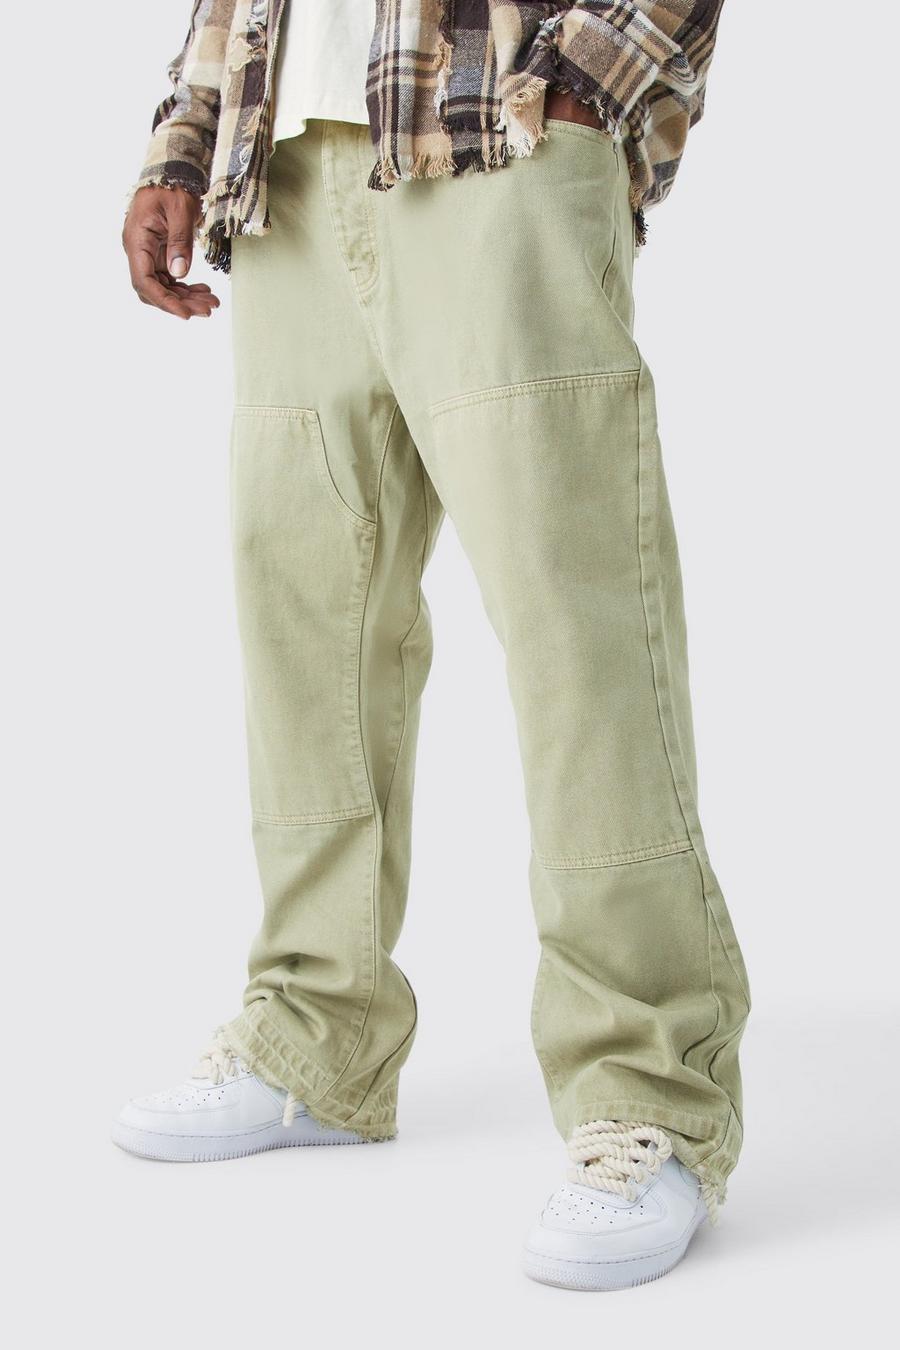 Jeans Plus Size Slim Fit in denim rigido con inserti a zampa, Sage